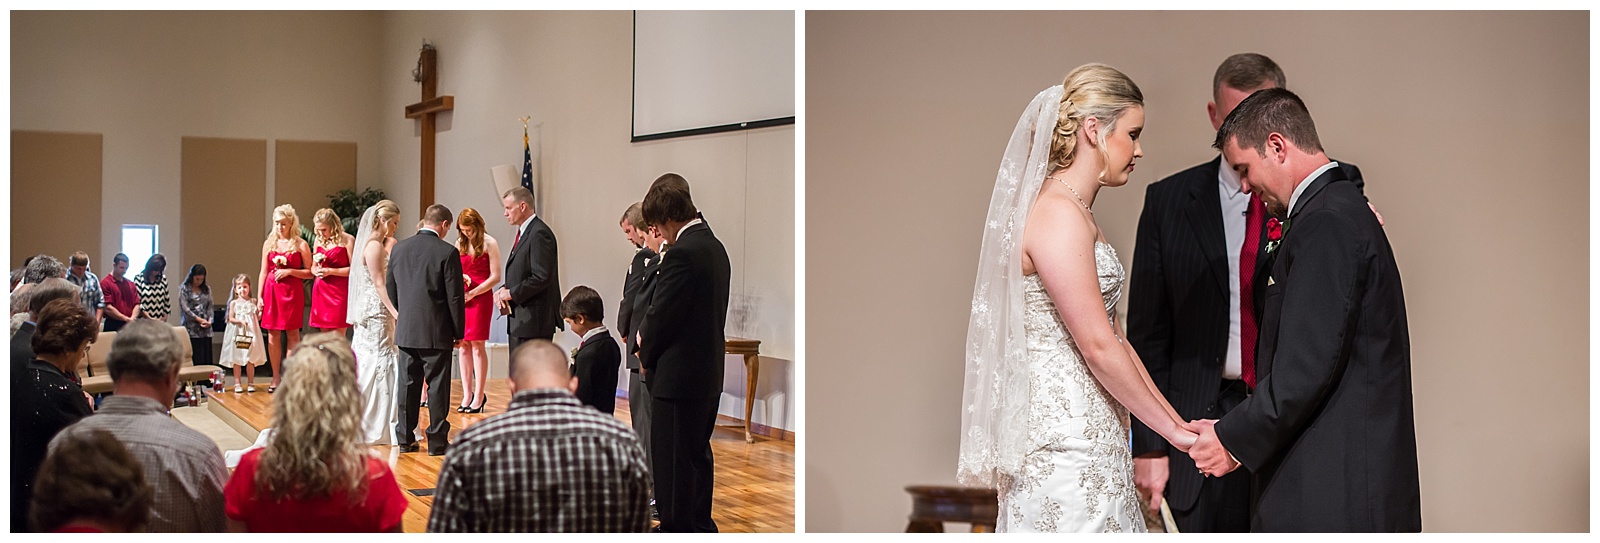 Wedding photography at Topeka Baptist Church in Topeka, Kansas.